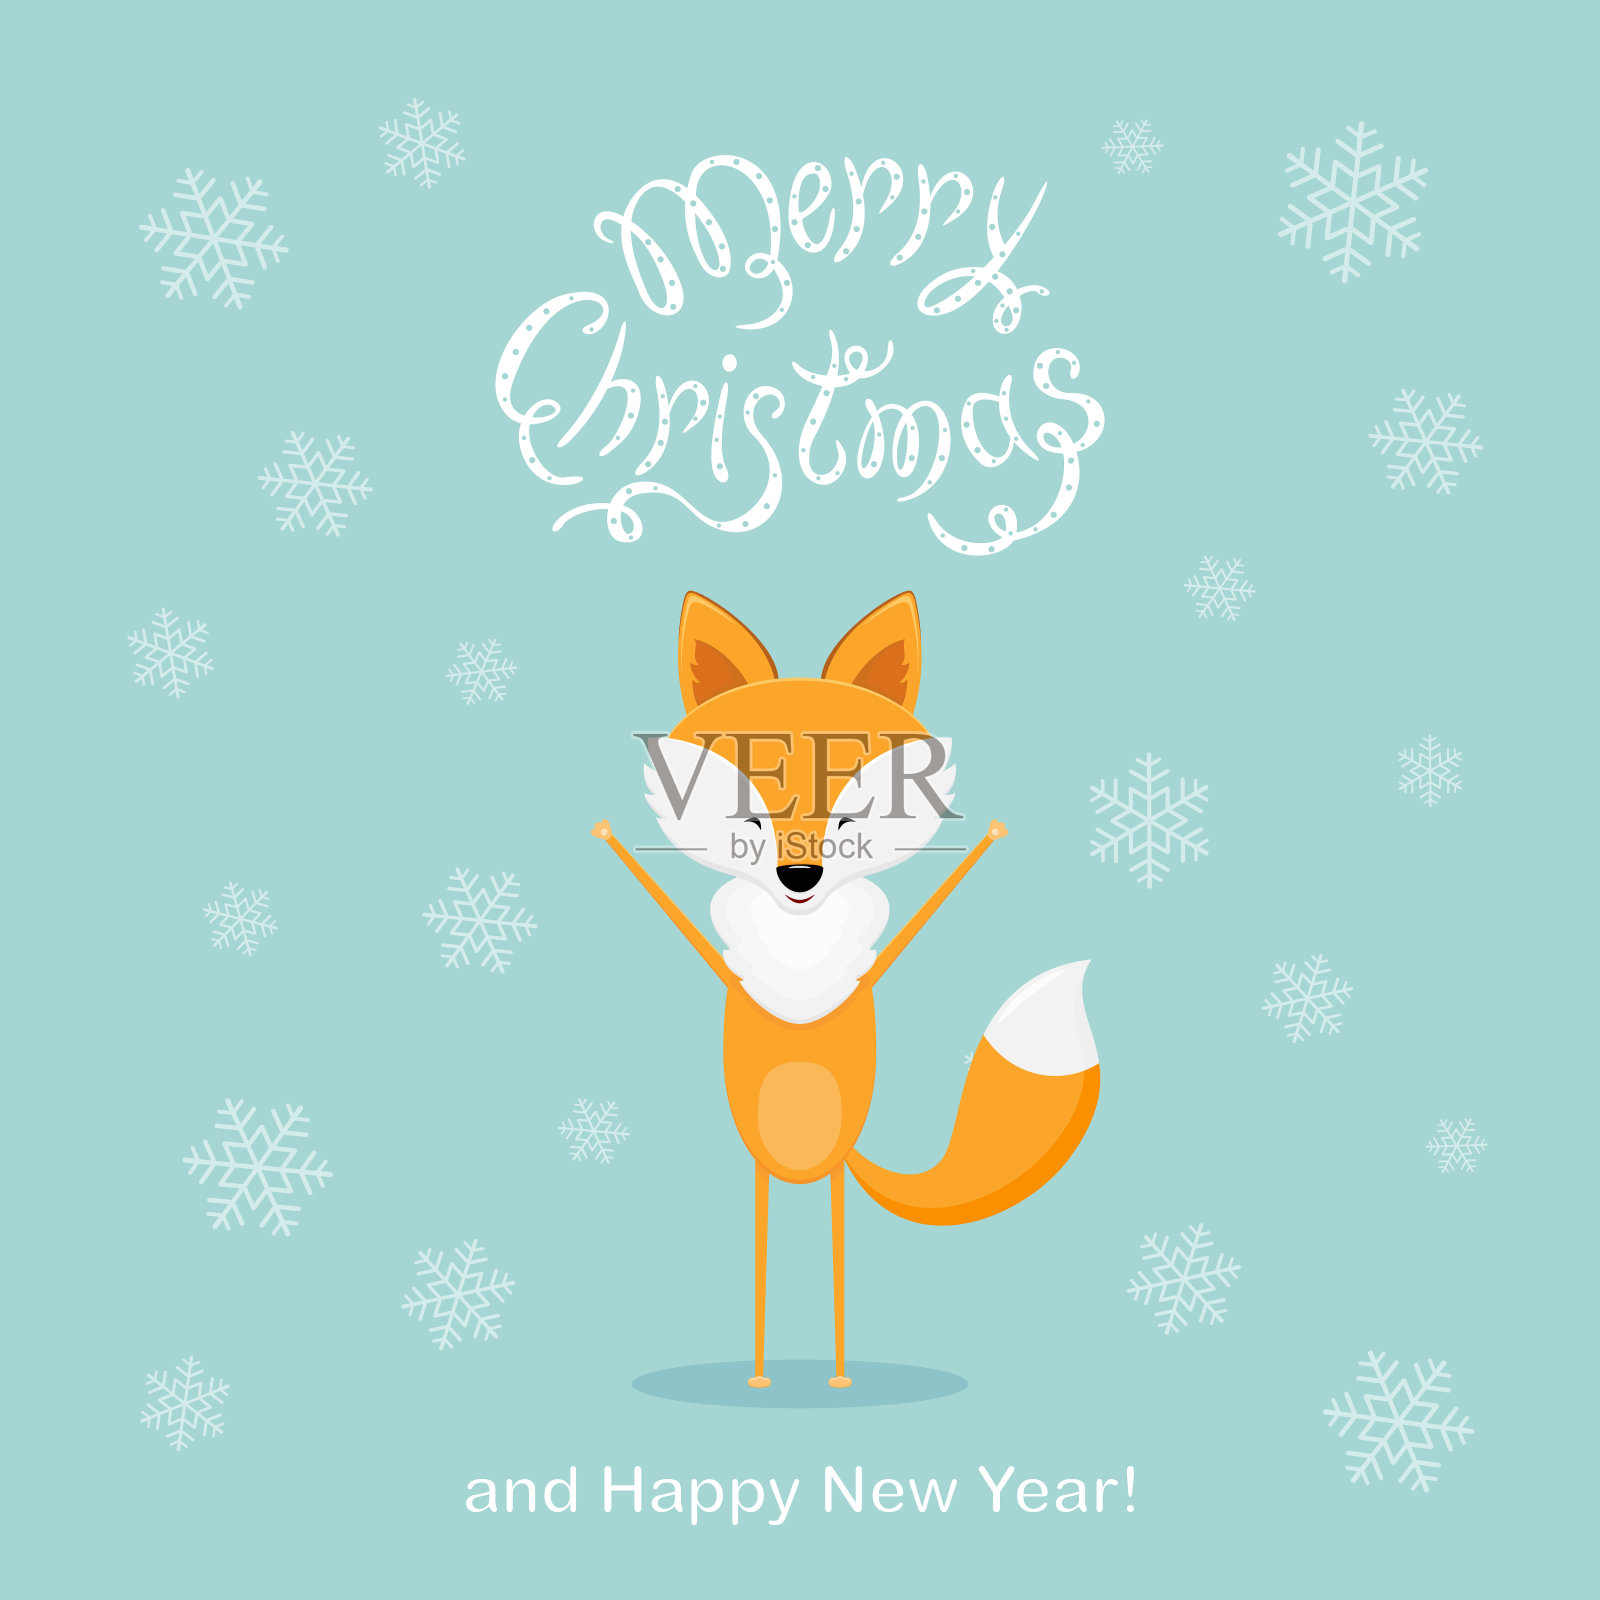 蓝色的圣诞背景，点缀着快乐的狐狸和雪花设计元素图片